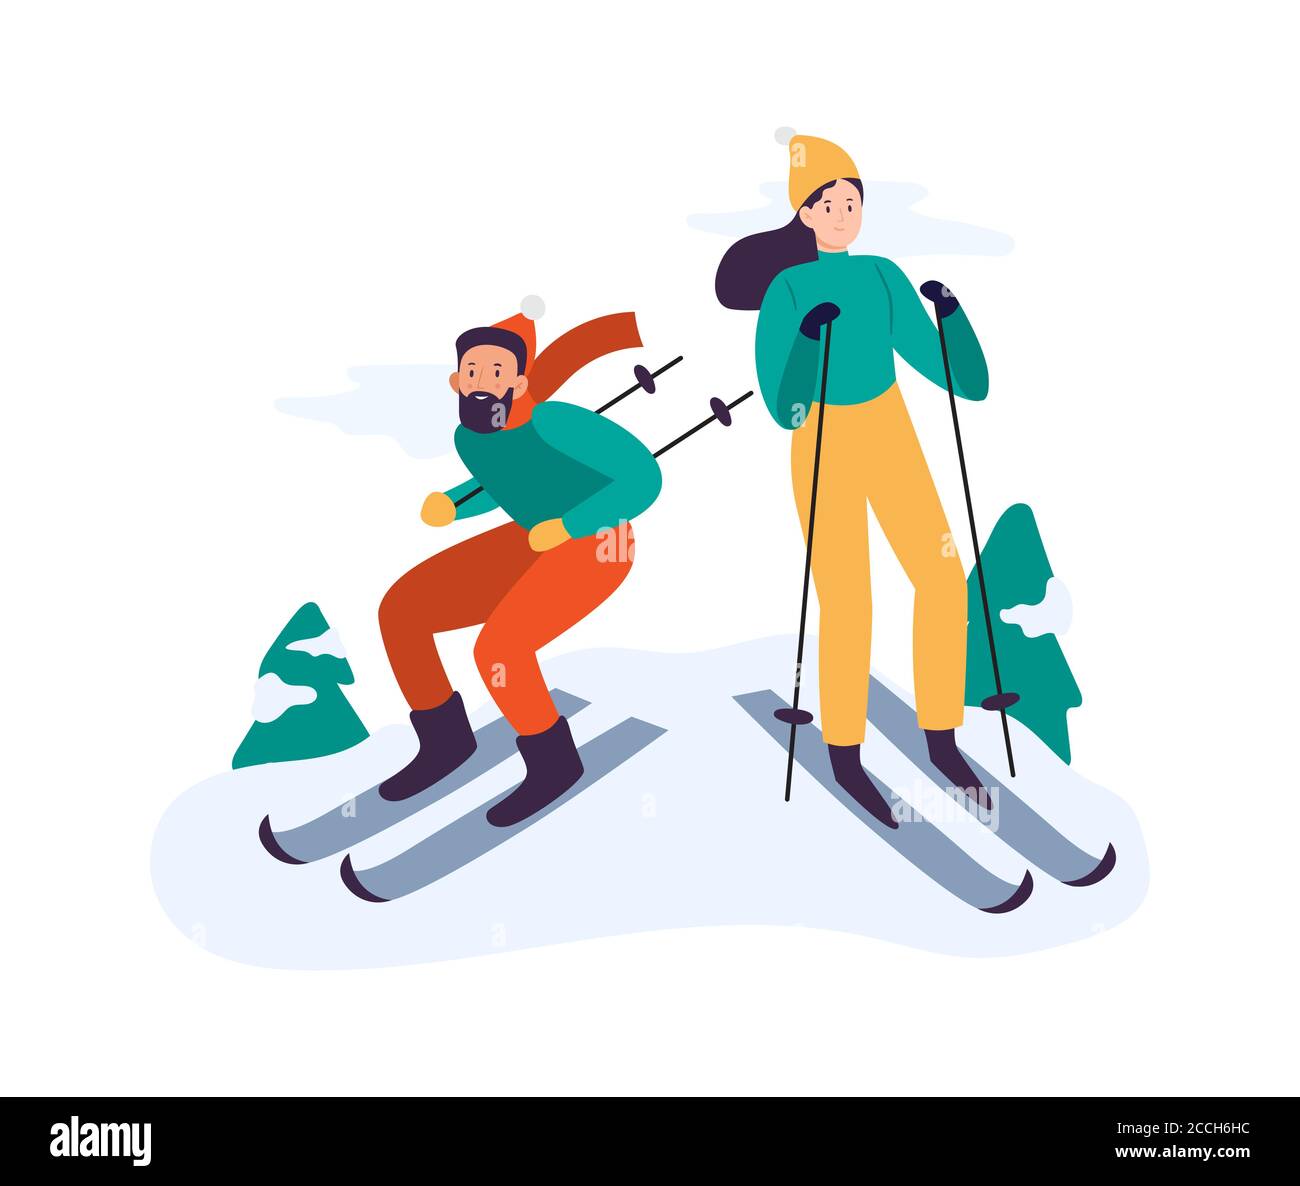 Winteraktivitäten. Menschen Skifahren. Paar verbringen Zeit zusammen aktiv im Freien, mit Freizeit mit Ausrüstung Stock Vektor